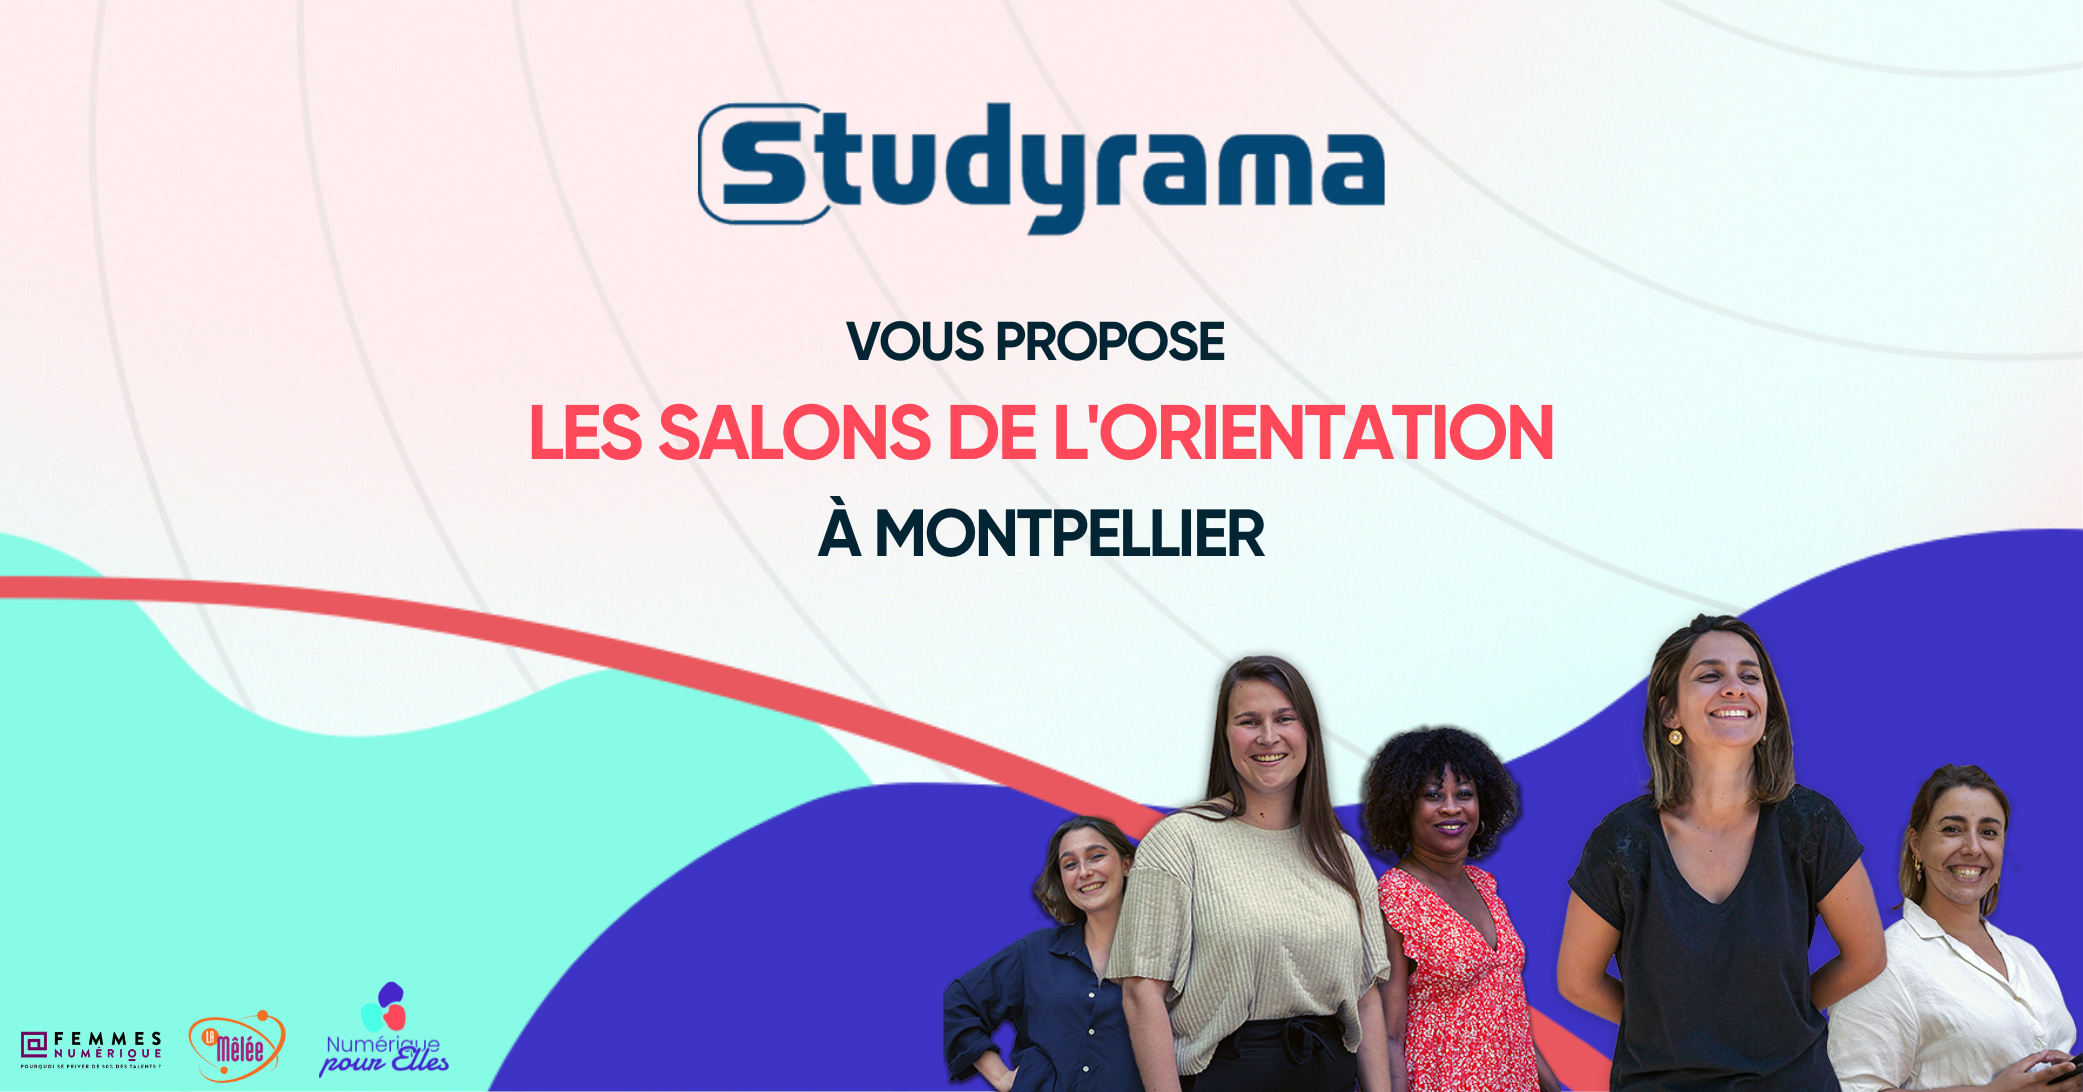 Les salons de l’orientation Studyrama – Montpellier